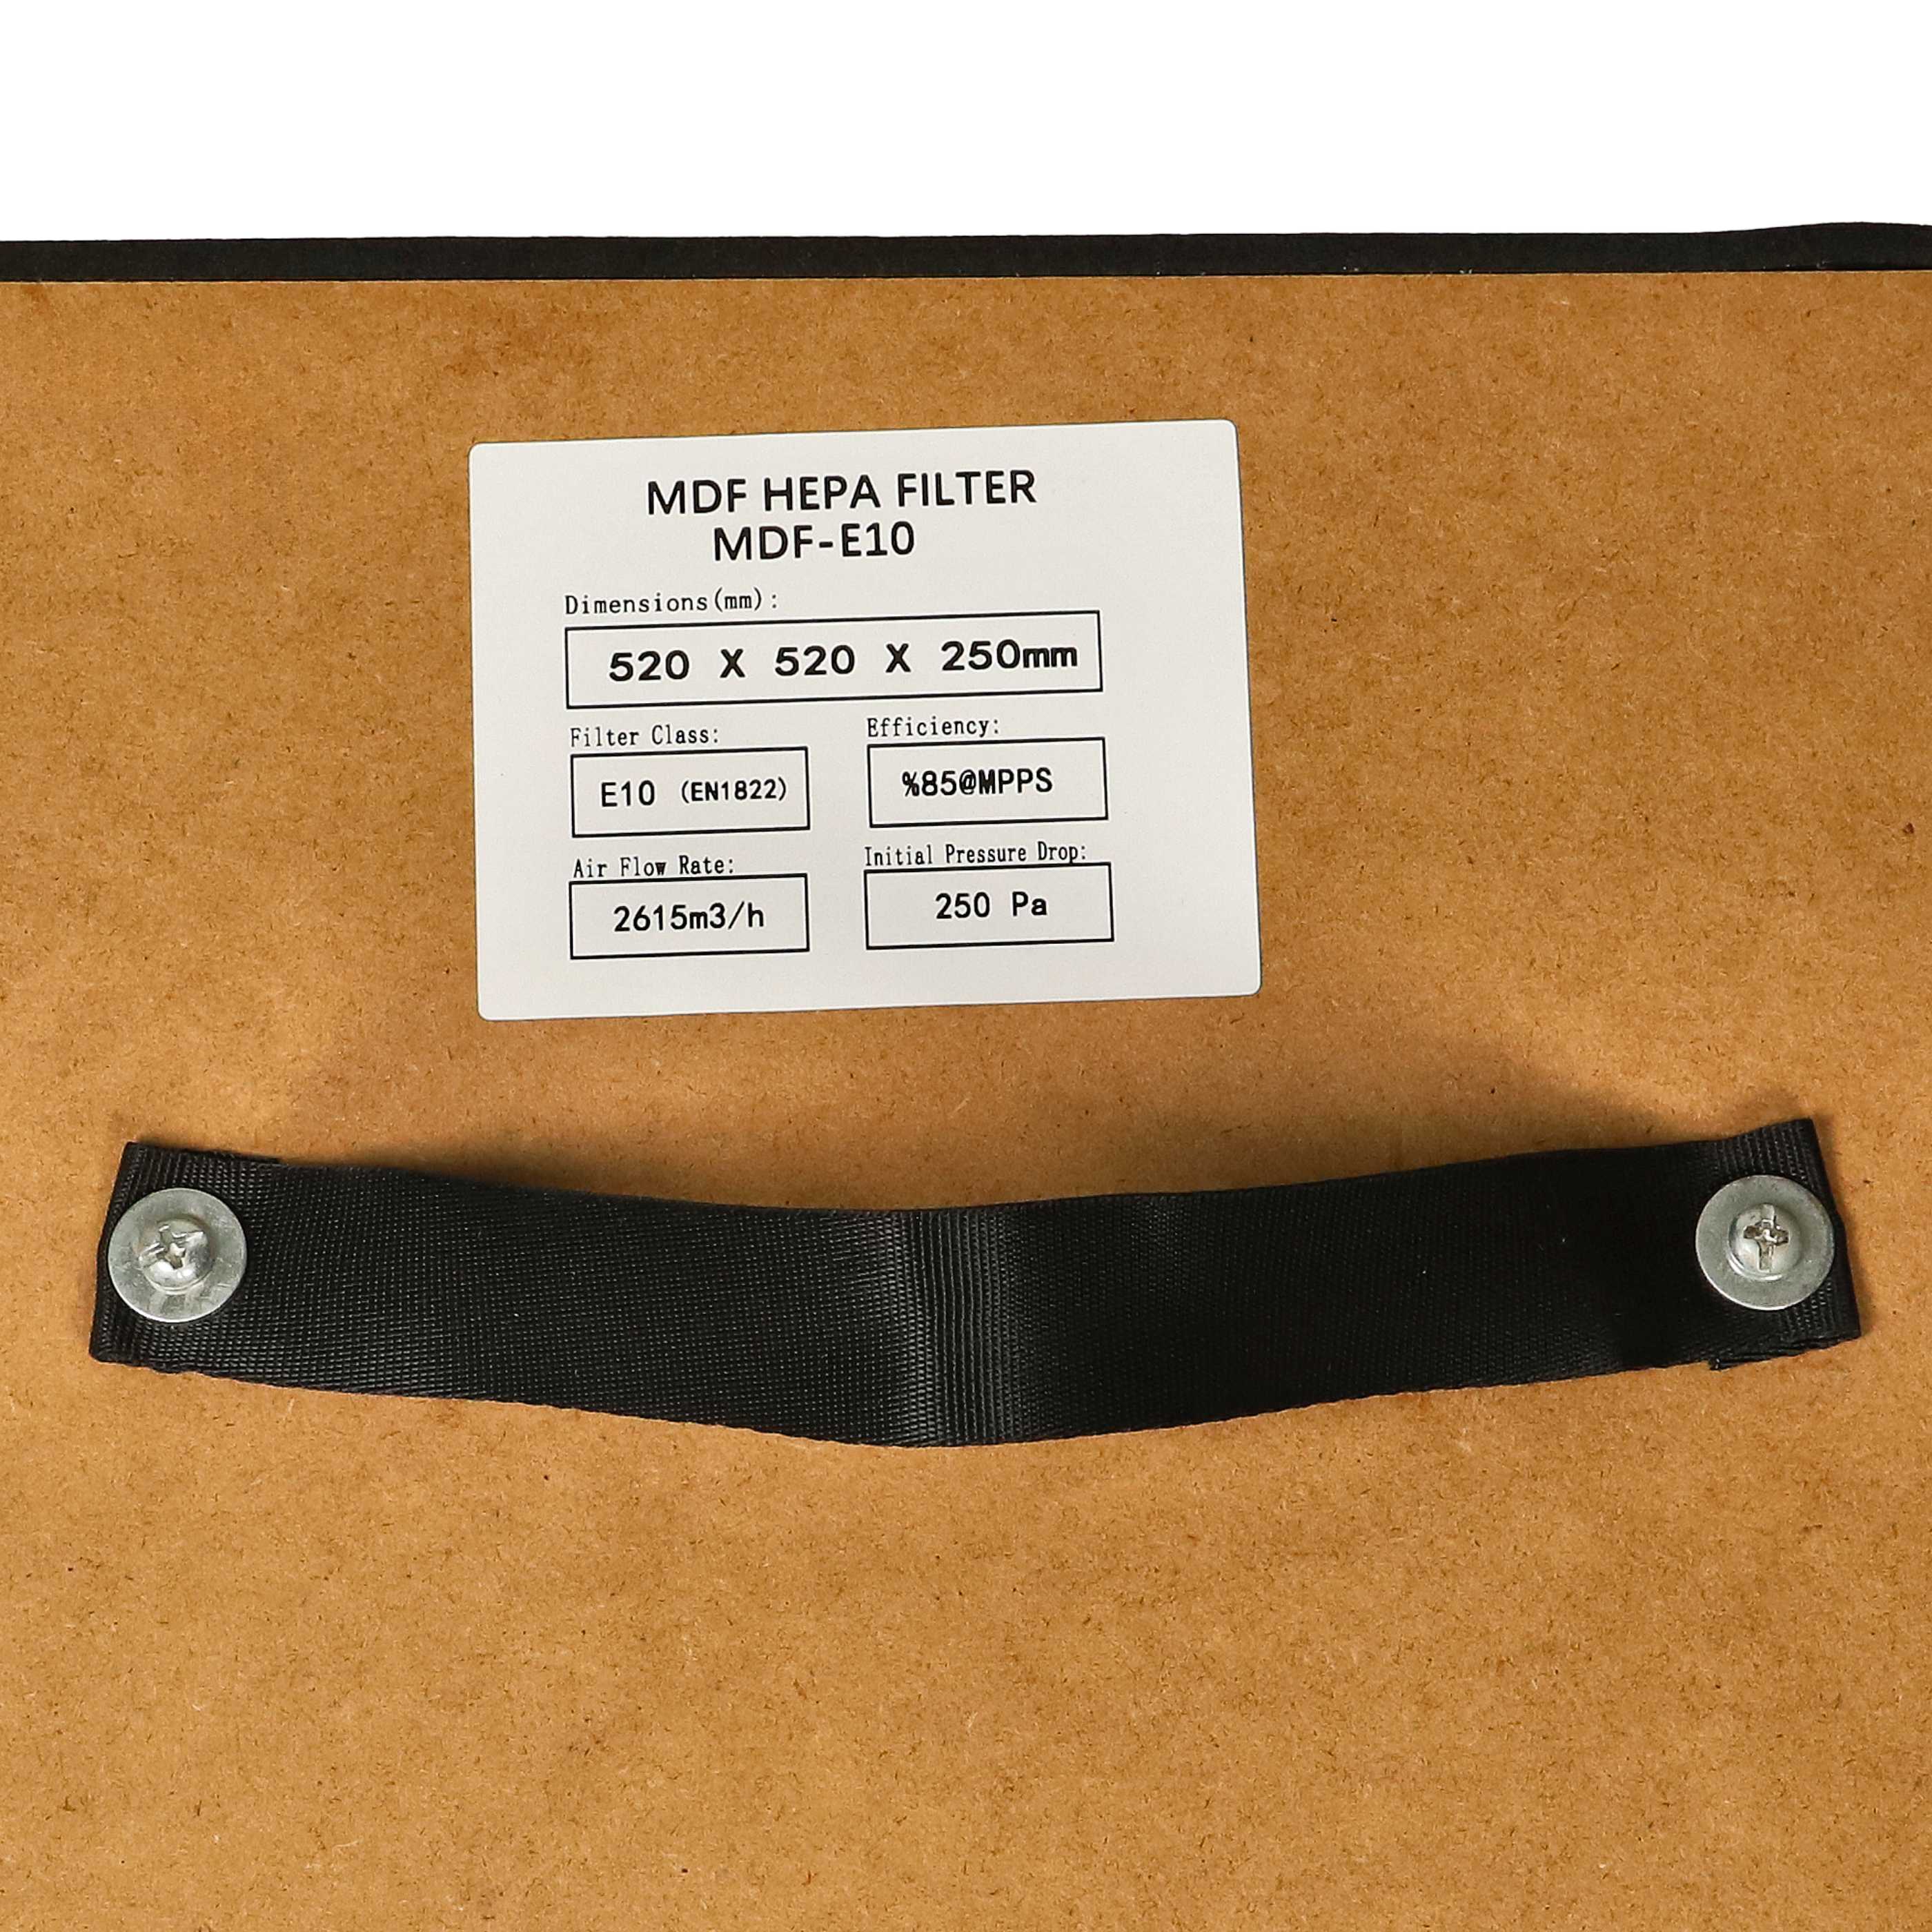 Filterkassette als Ersatz für ELMAG 58621, 109 0454 für Teka Absauganlage u.a. - HEPA-Filter, E10